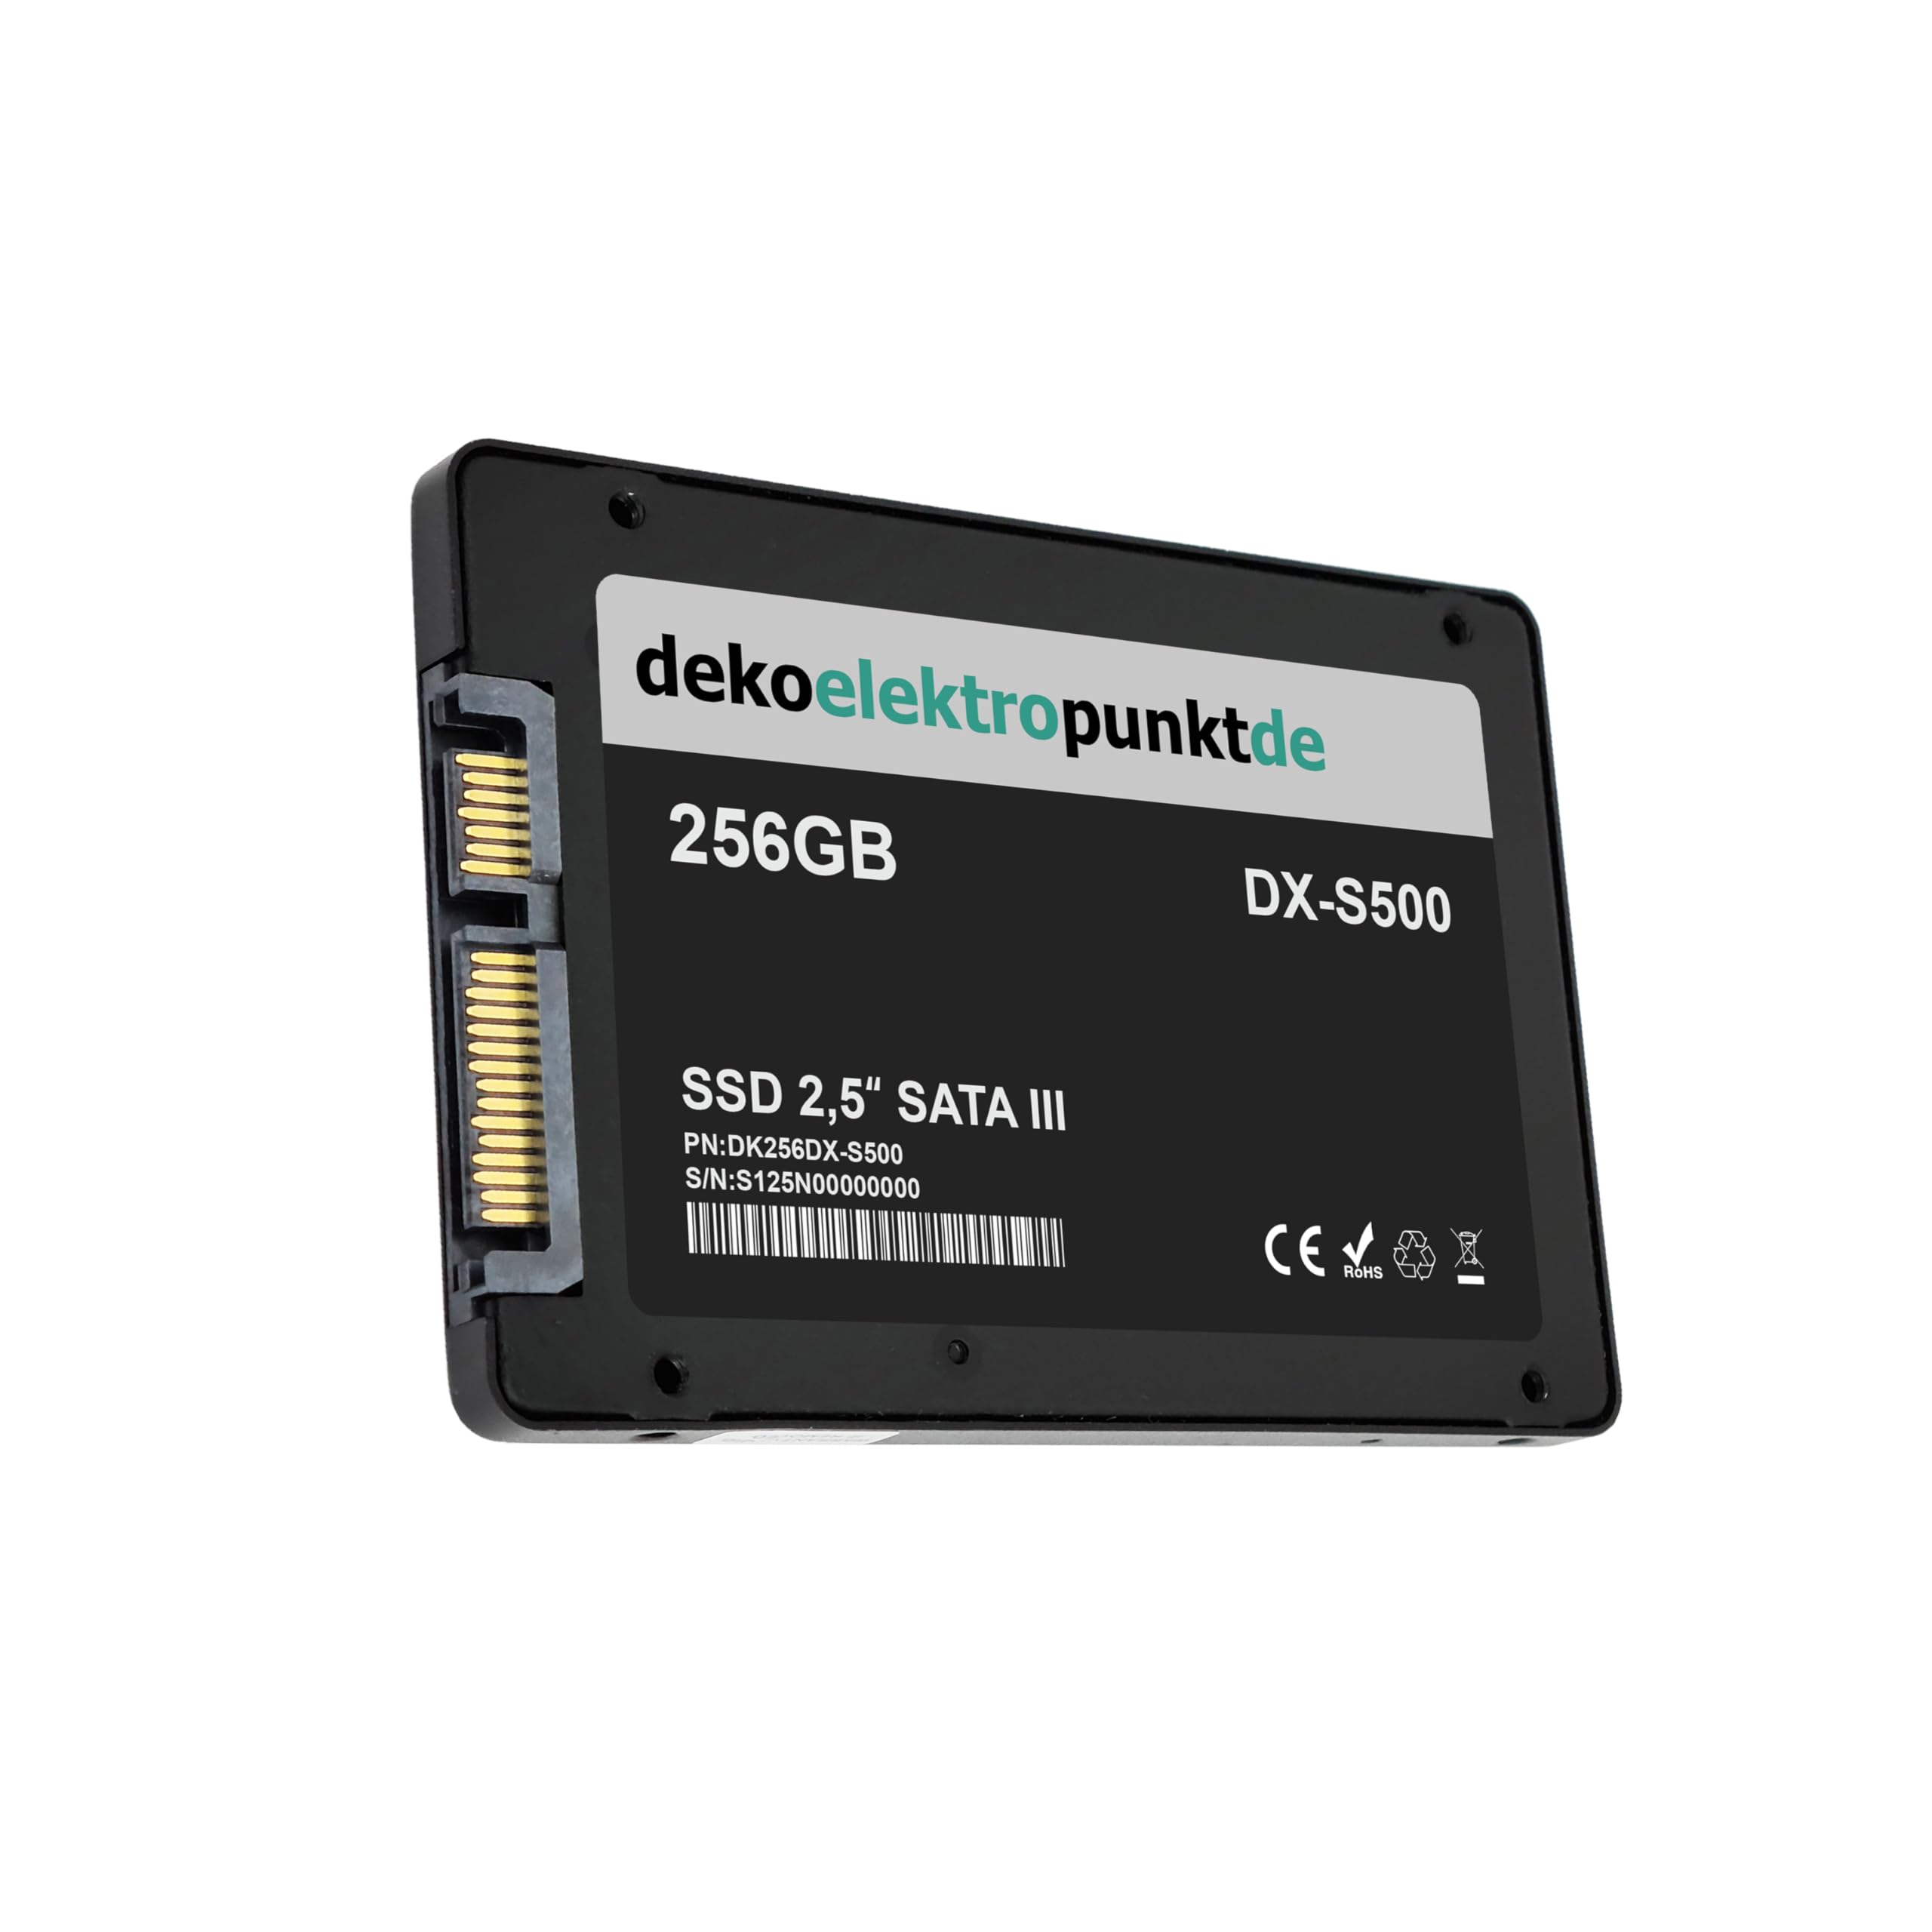 dekoelektropunktde 256GB SSD Festplatte kompatibel mit Clevo M660N M762SU M728T M767SU